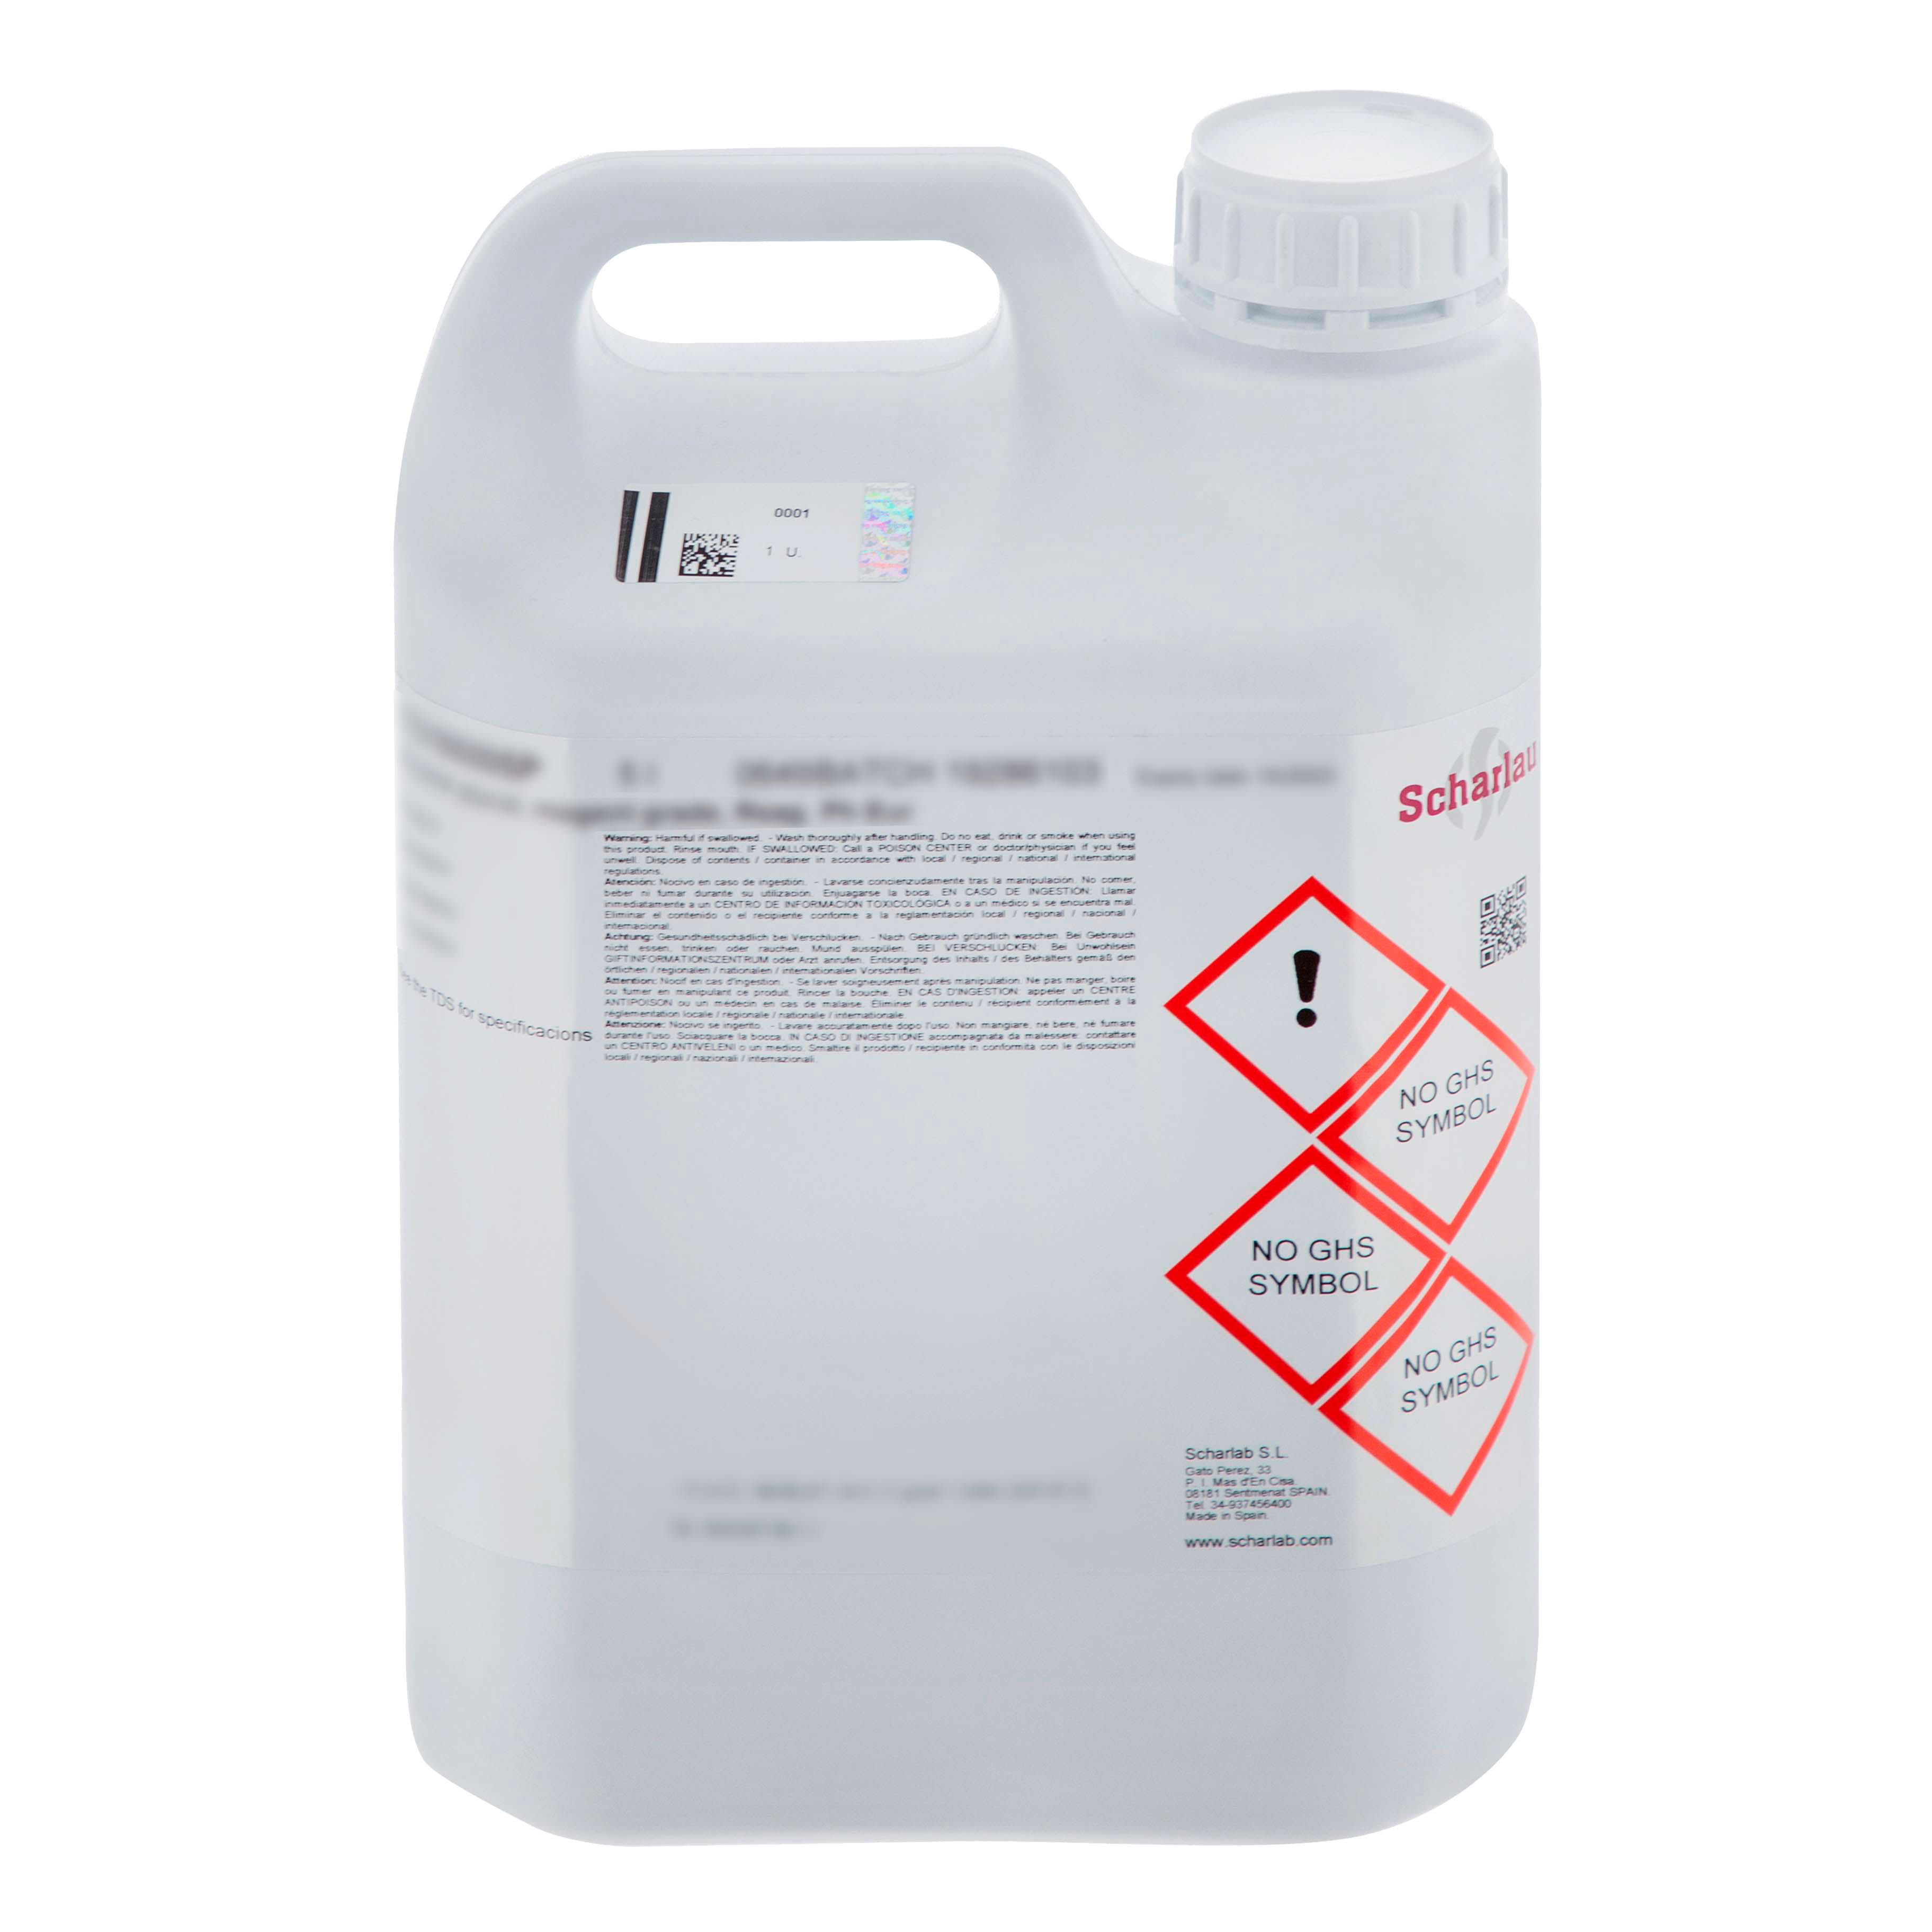 Ácido sulfúrico, solución 90 - 91% p/p, para determinar grasa según Gerber y para comprobar nitratos en leche